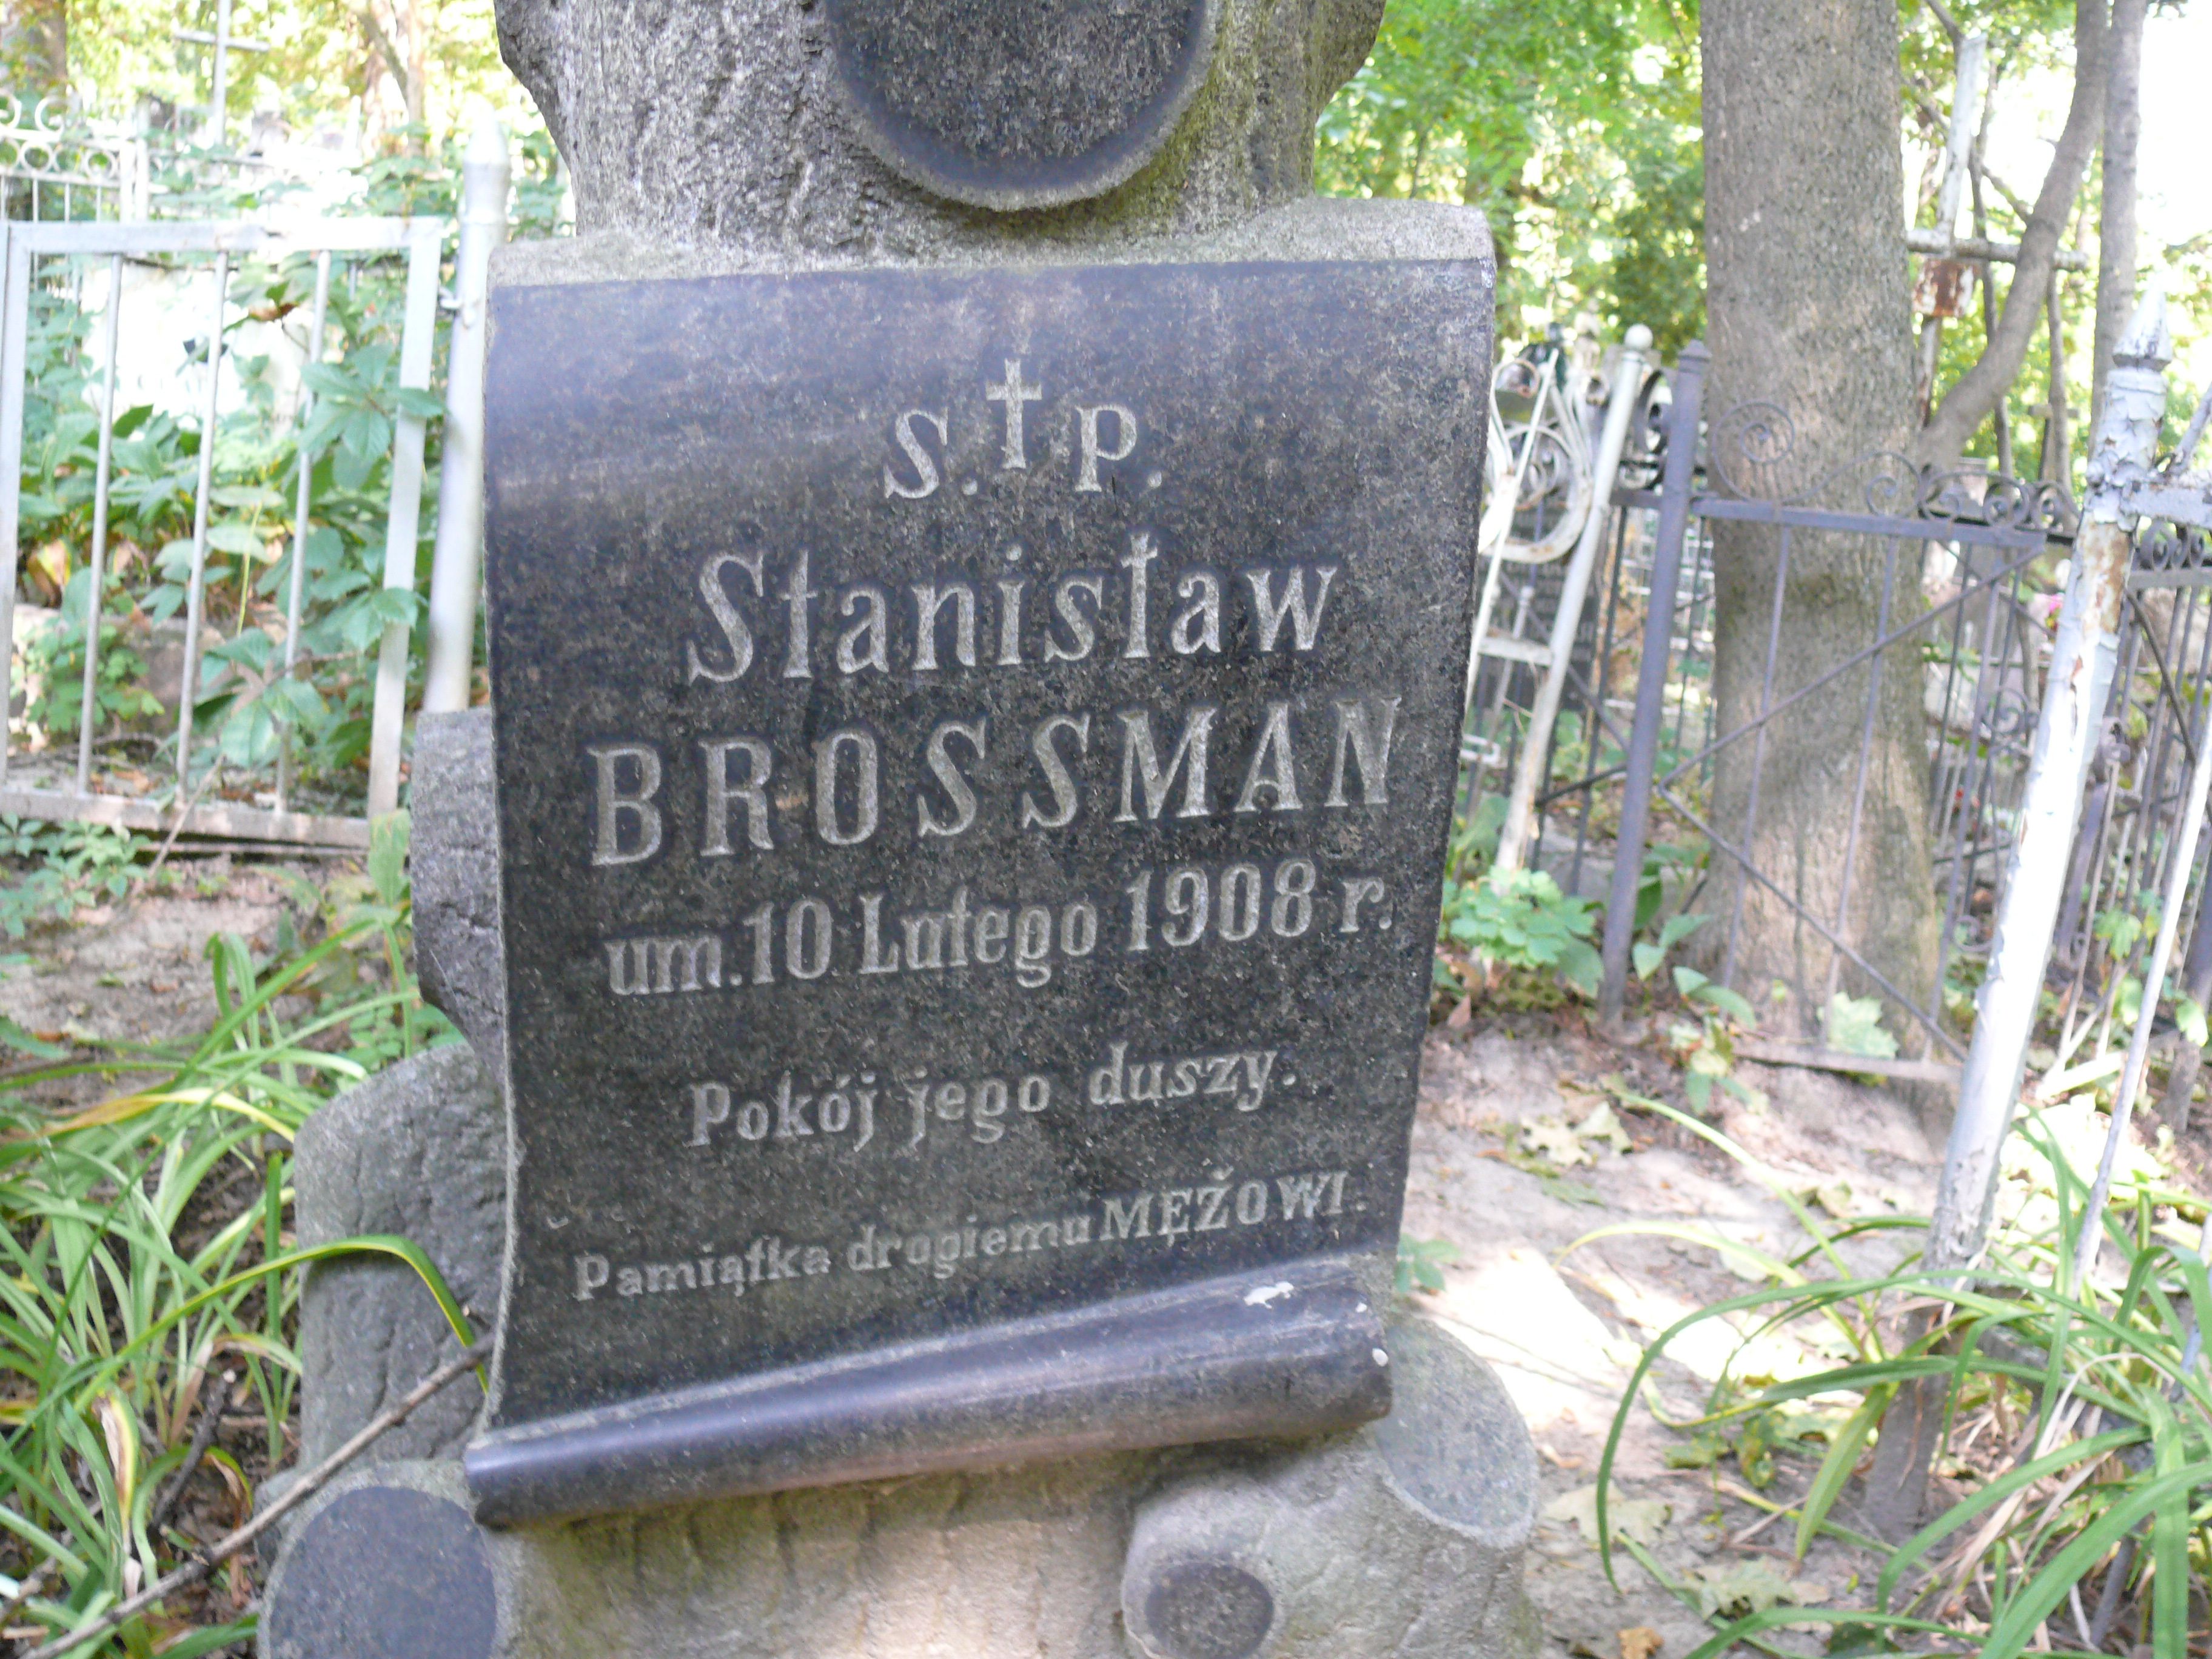 Napis z nagrobka Stanisława Brossmana